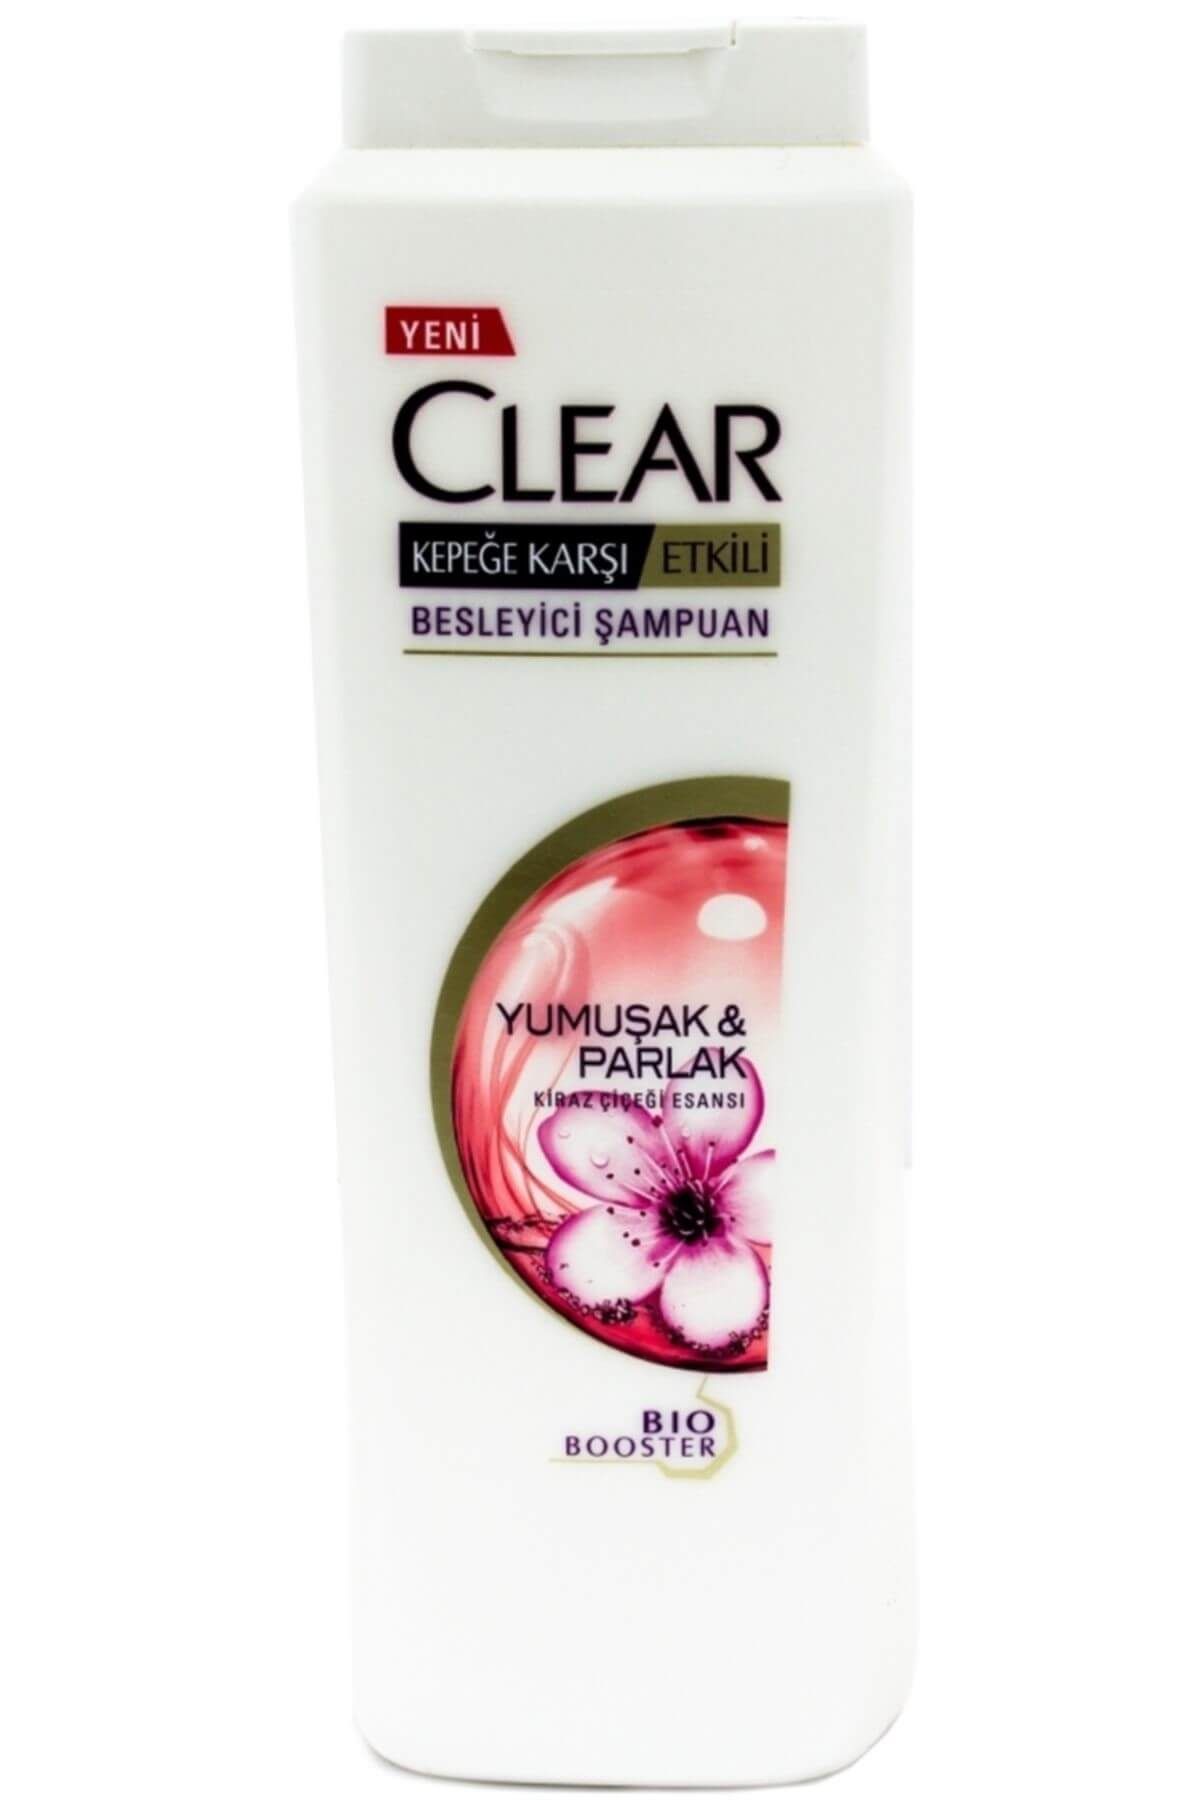 Clear Kadınlara Özel Şampuan - Yumuşak Parlak Kiraz Çiçeği 550 ml